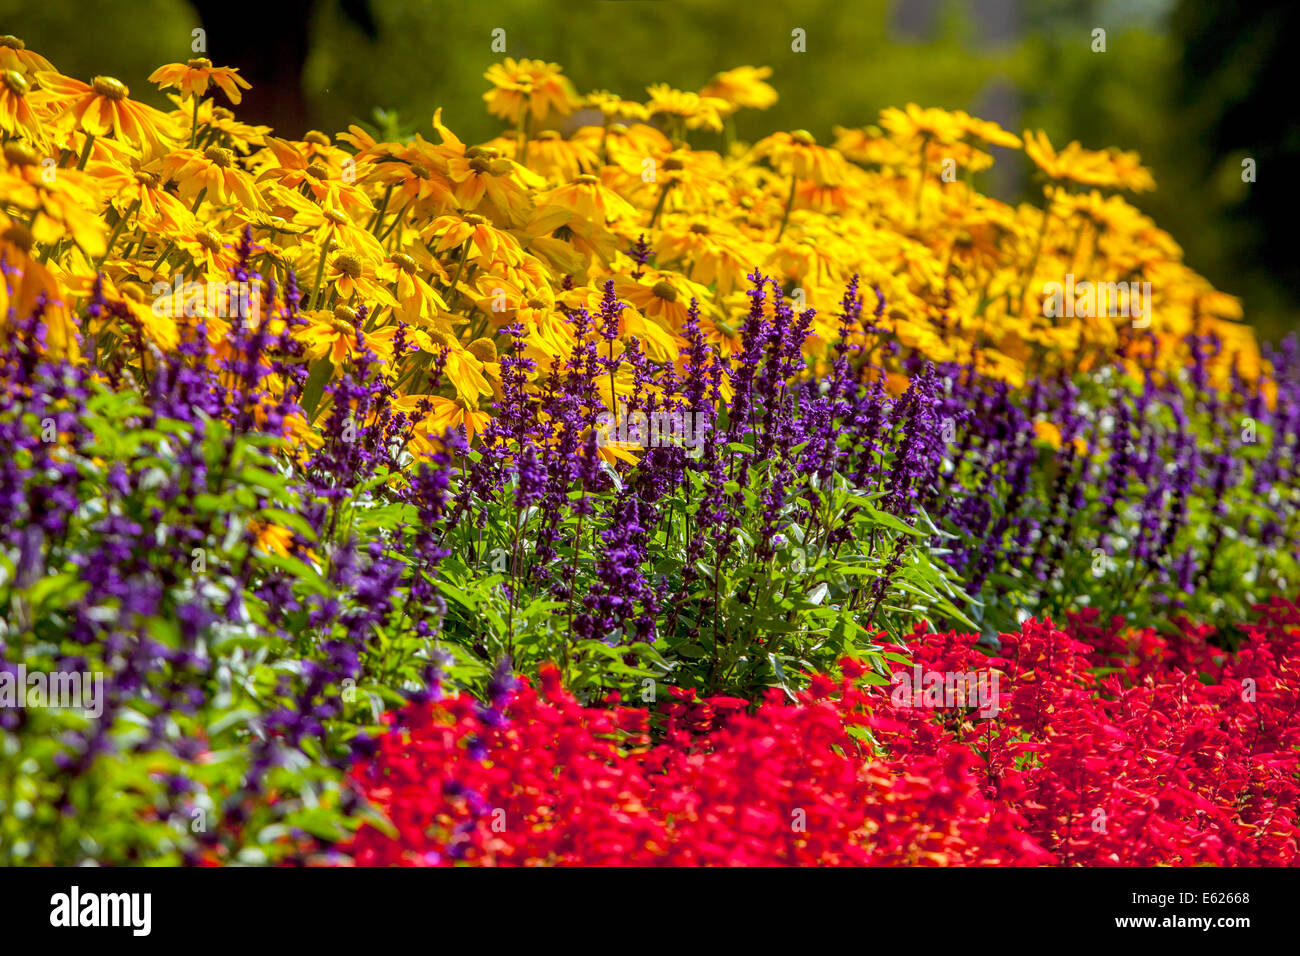 Un lit de fleurs coloré de plantes à fleurs annuelles, Rudbeckia Prairie Sun, Salvia splendens, belle bordure de fleurs de jardin mélangées Banque D'Images